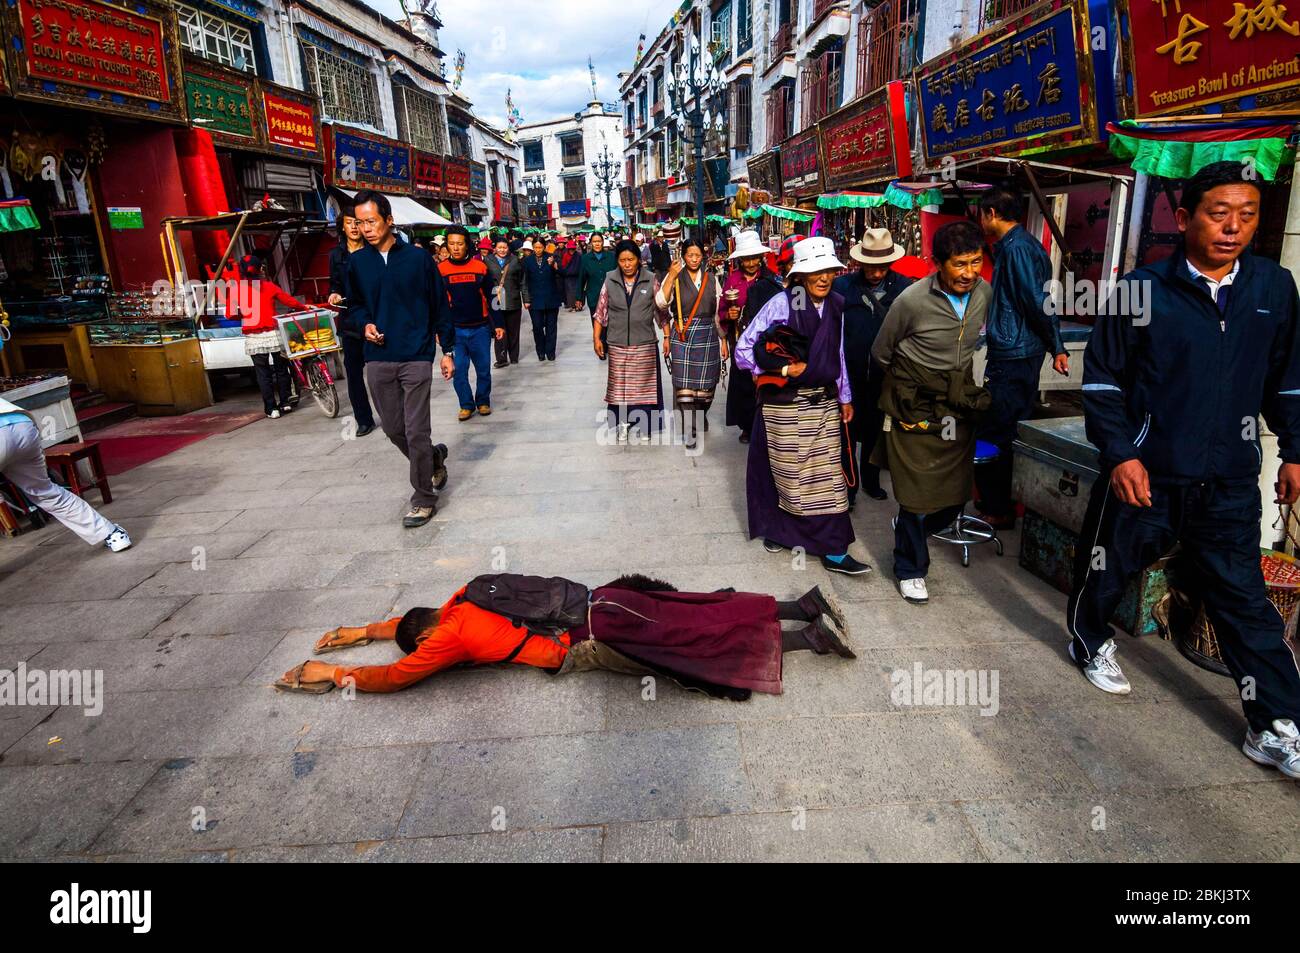 China, Zentraltibet, Ü Tsang, Lhasa, ein Pilgermönch durchquert die Gesamtheit des Barkhor, Gassen, die sich um das historische tibetische Viertel um den Jokhang herum in seitlichen Niederwerfungen, also mit der Breite und nicht der Länge seines Körpers, bewegen Stockfoto